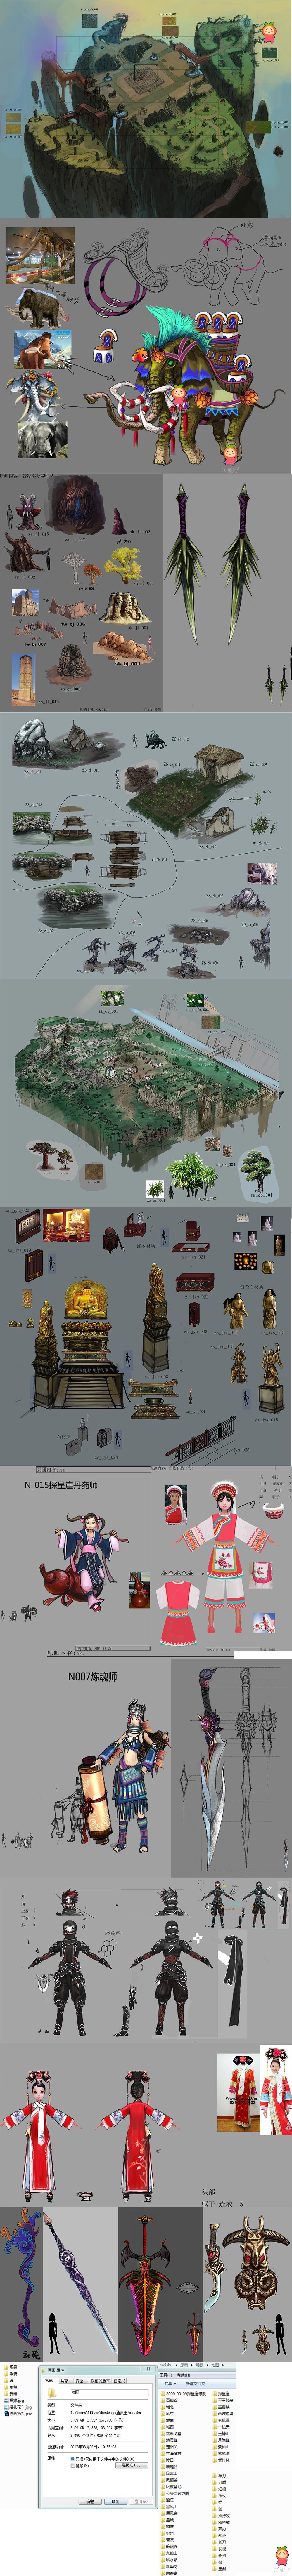 《通灵王》全部原画资源 场景 人物 怪物 武器 座骑等素材